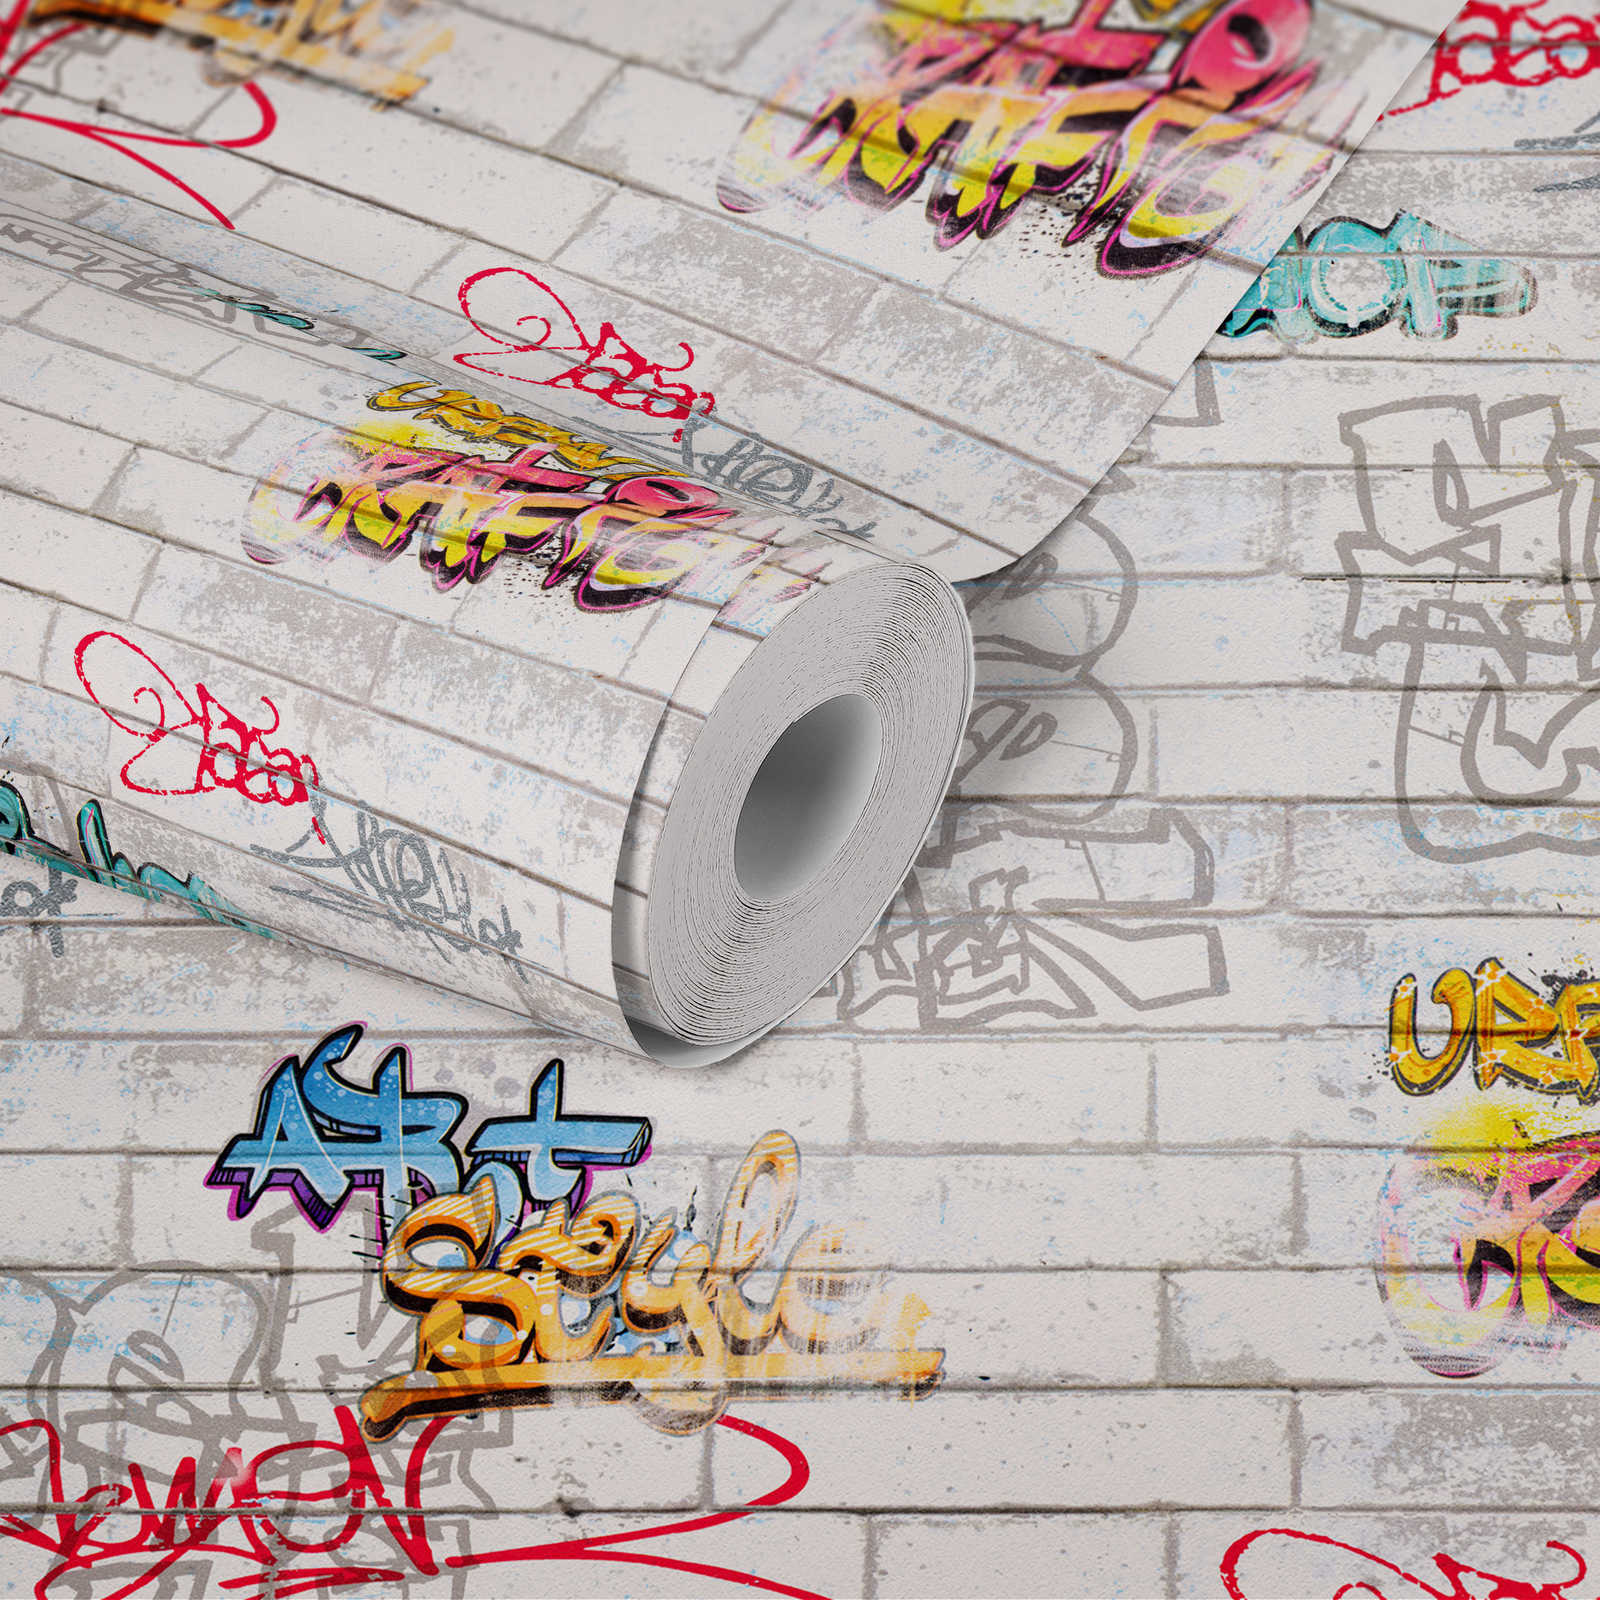             Papier peint graffiti imitation mur pour chambre d'ado - multicolore, blanc
        